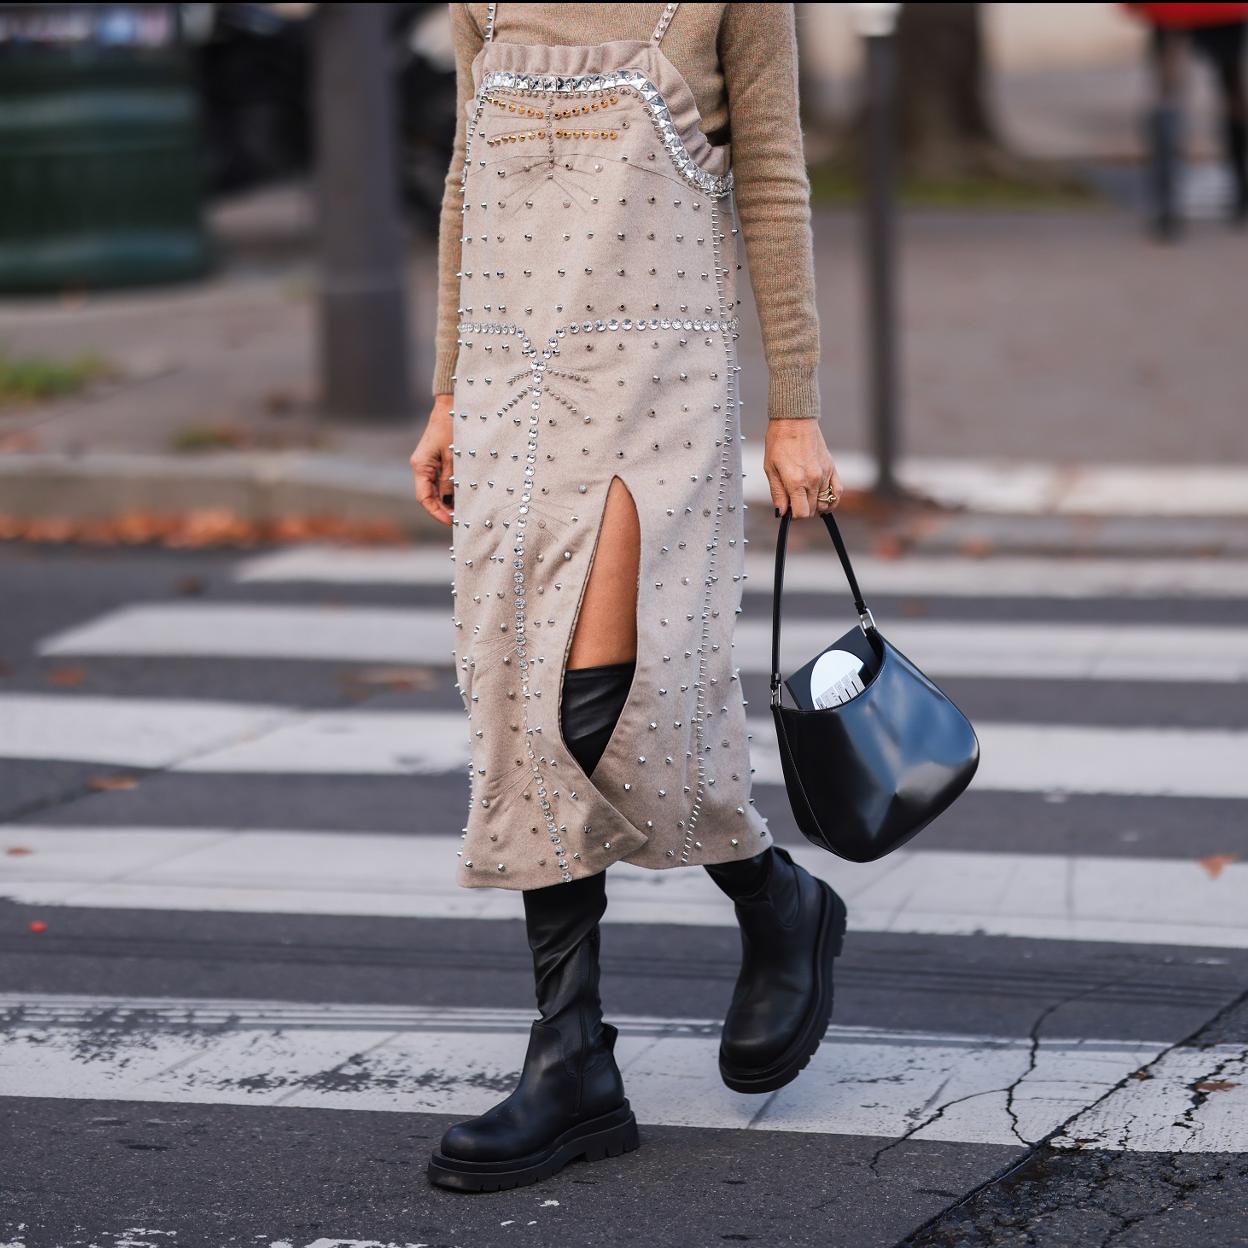 Botas altas de suela plana, el calzado cómodo que combina con todo está en H&M en tres diferentes | Mujer Hoy